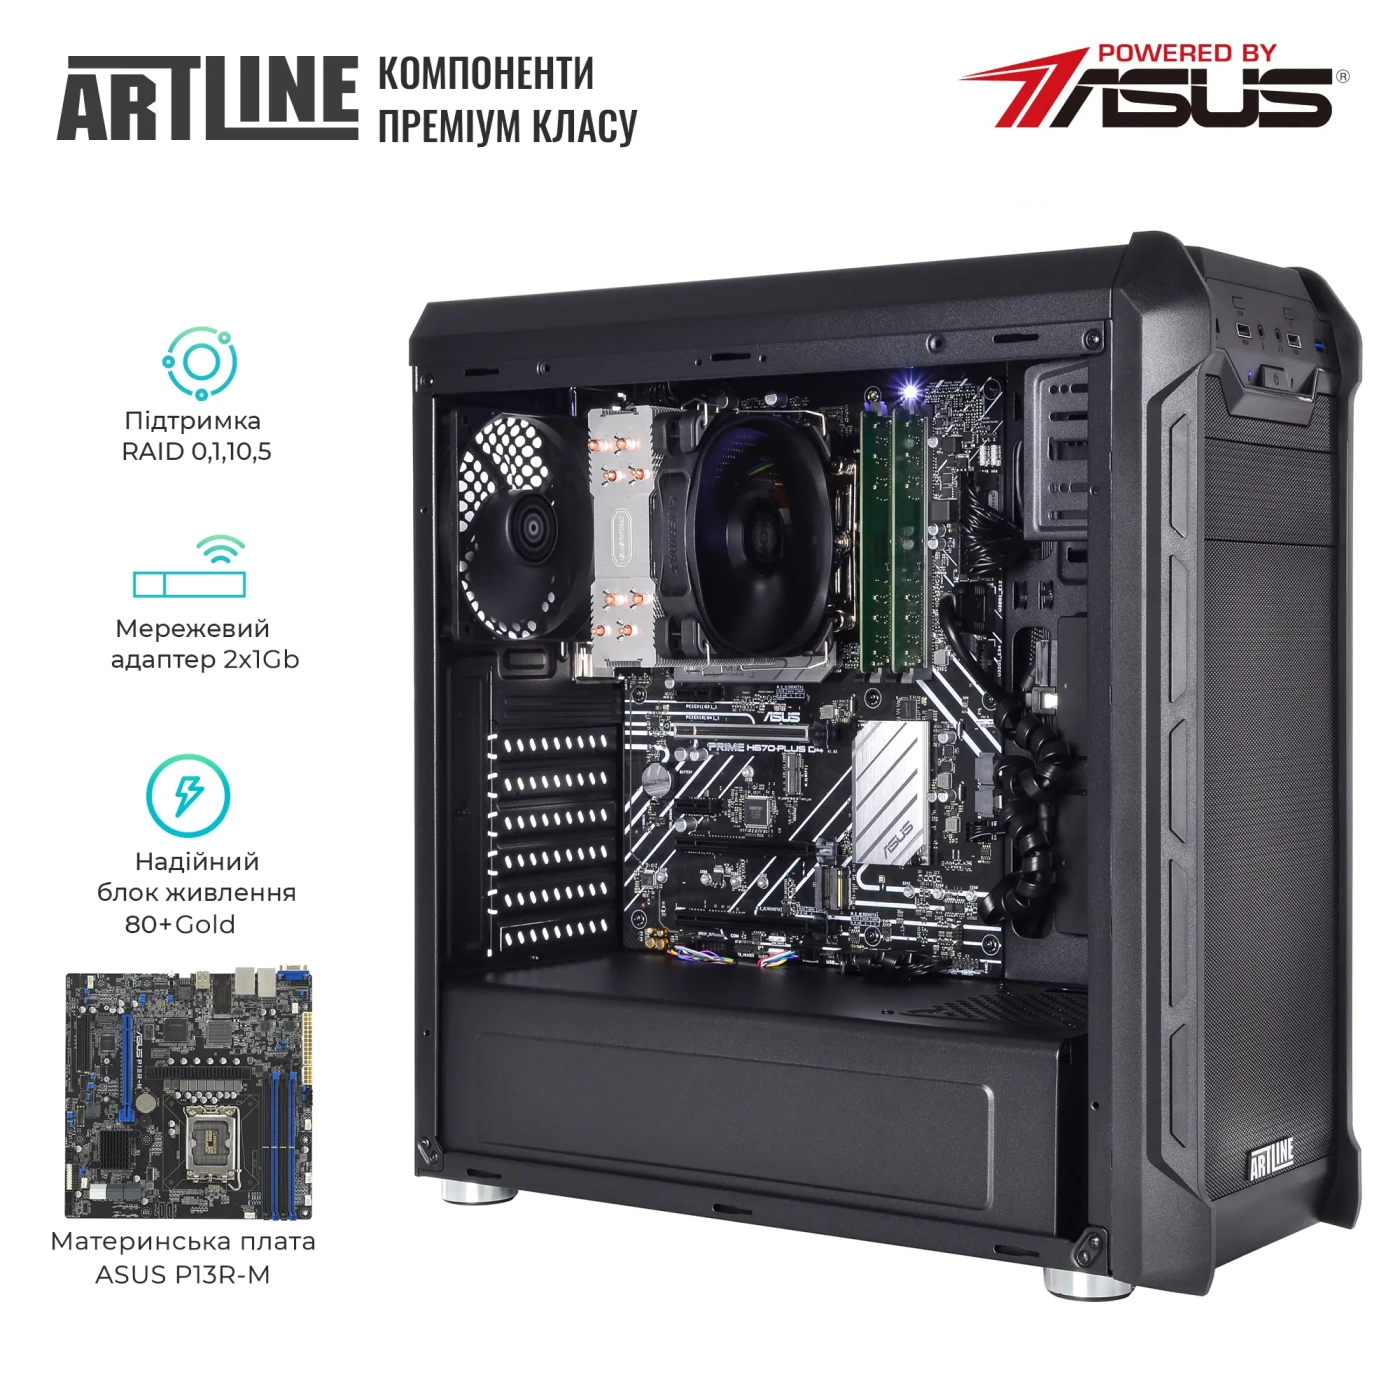 Купить Сервер ARTLINE Business T25 (T25v40) - фото 2